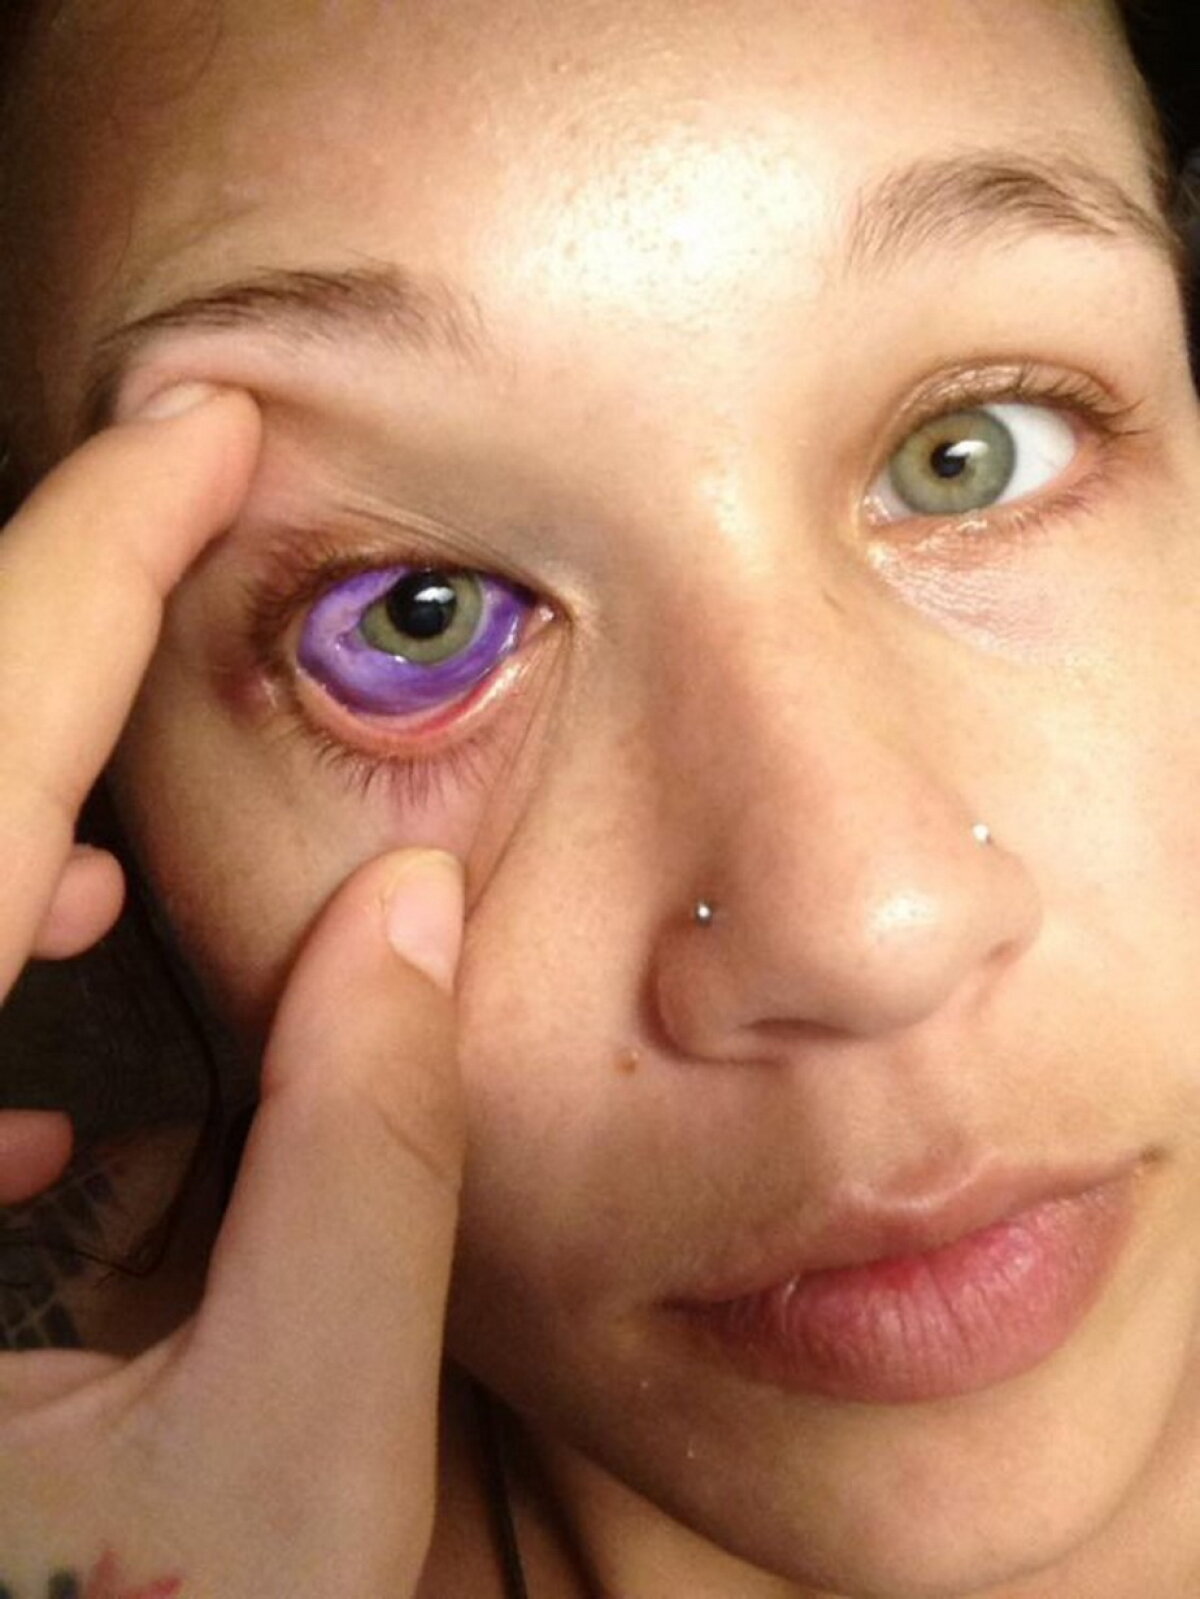 FOTO & VIDEO A vrut să îşi facă un tatuaj în ochi, însă ce a păţit este cu adevărat şocant!